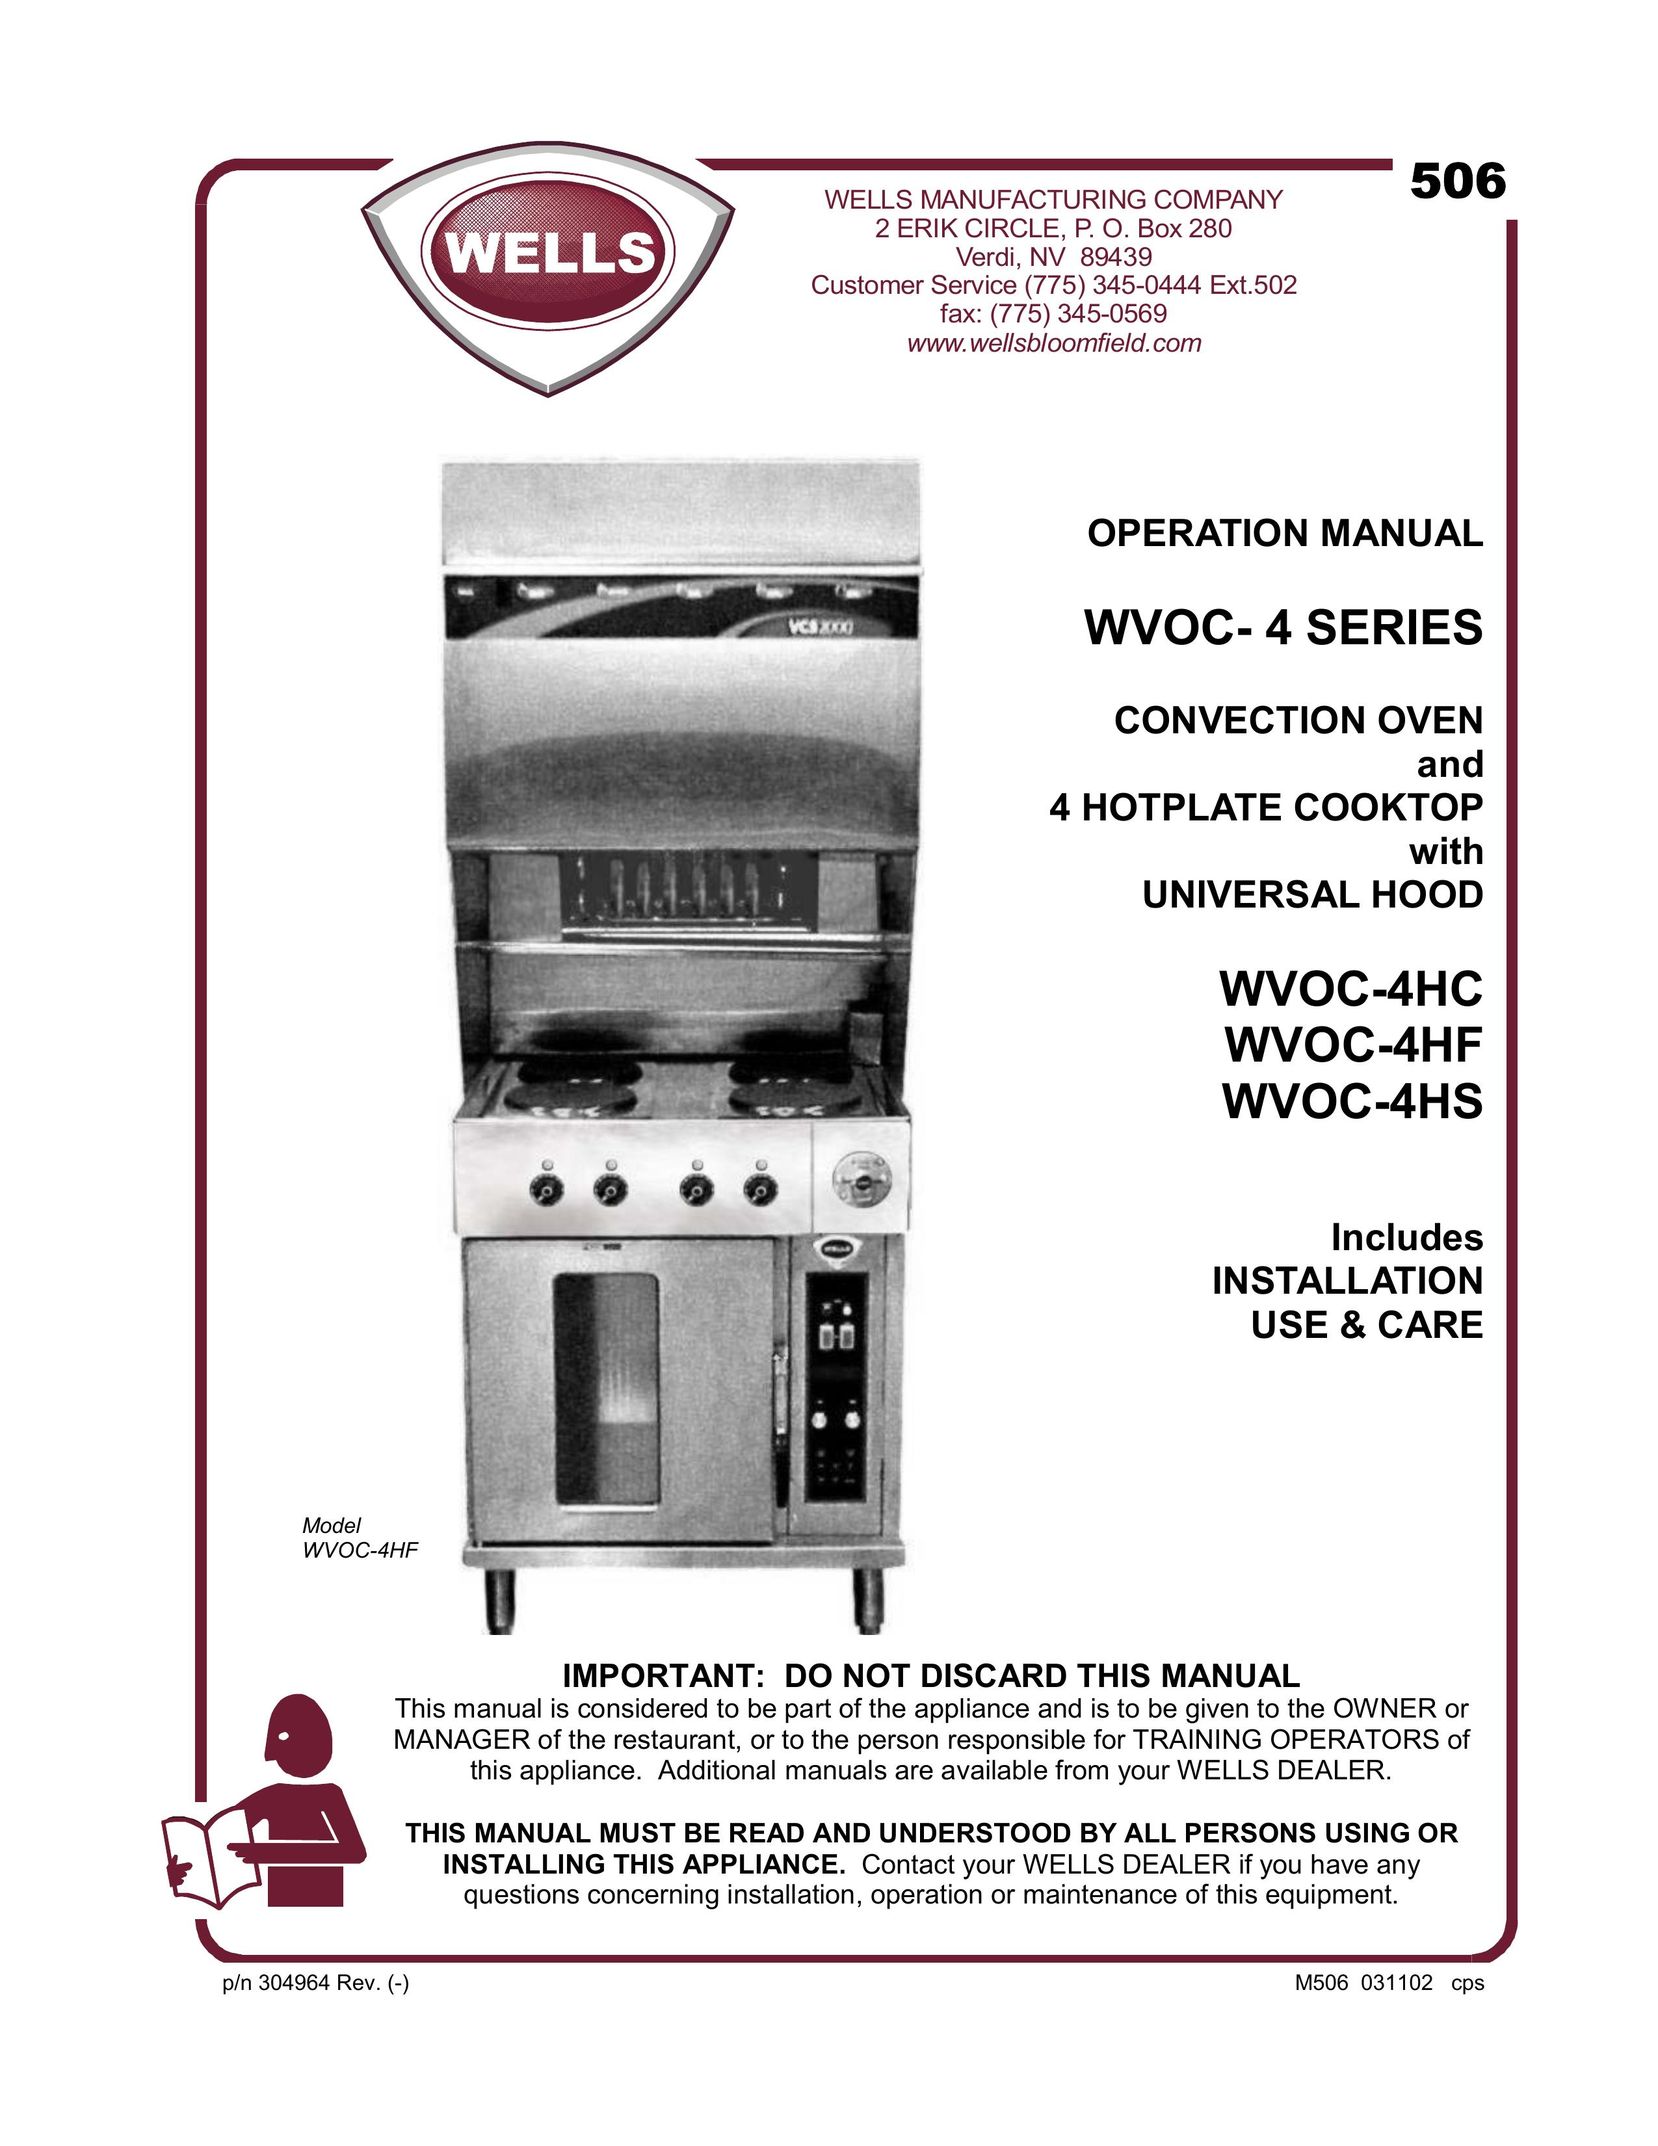 Wells WVOC-4HS Cooktop User Manual